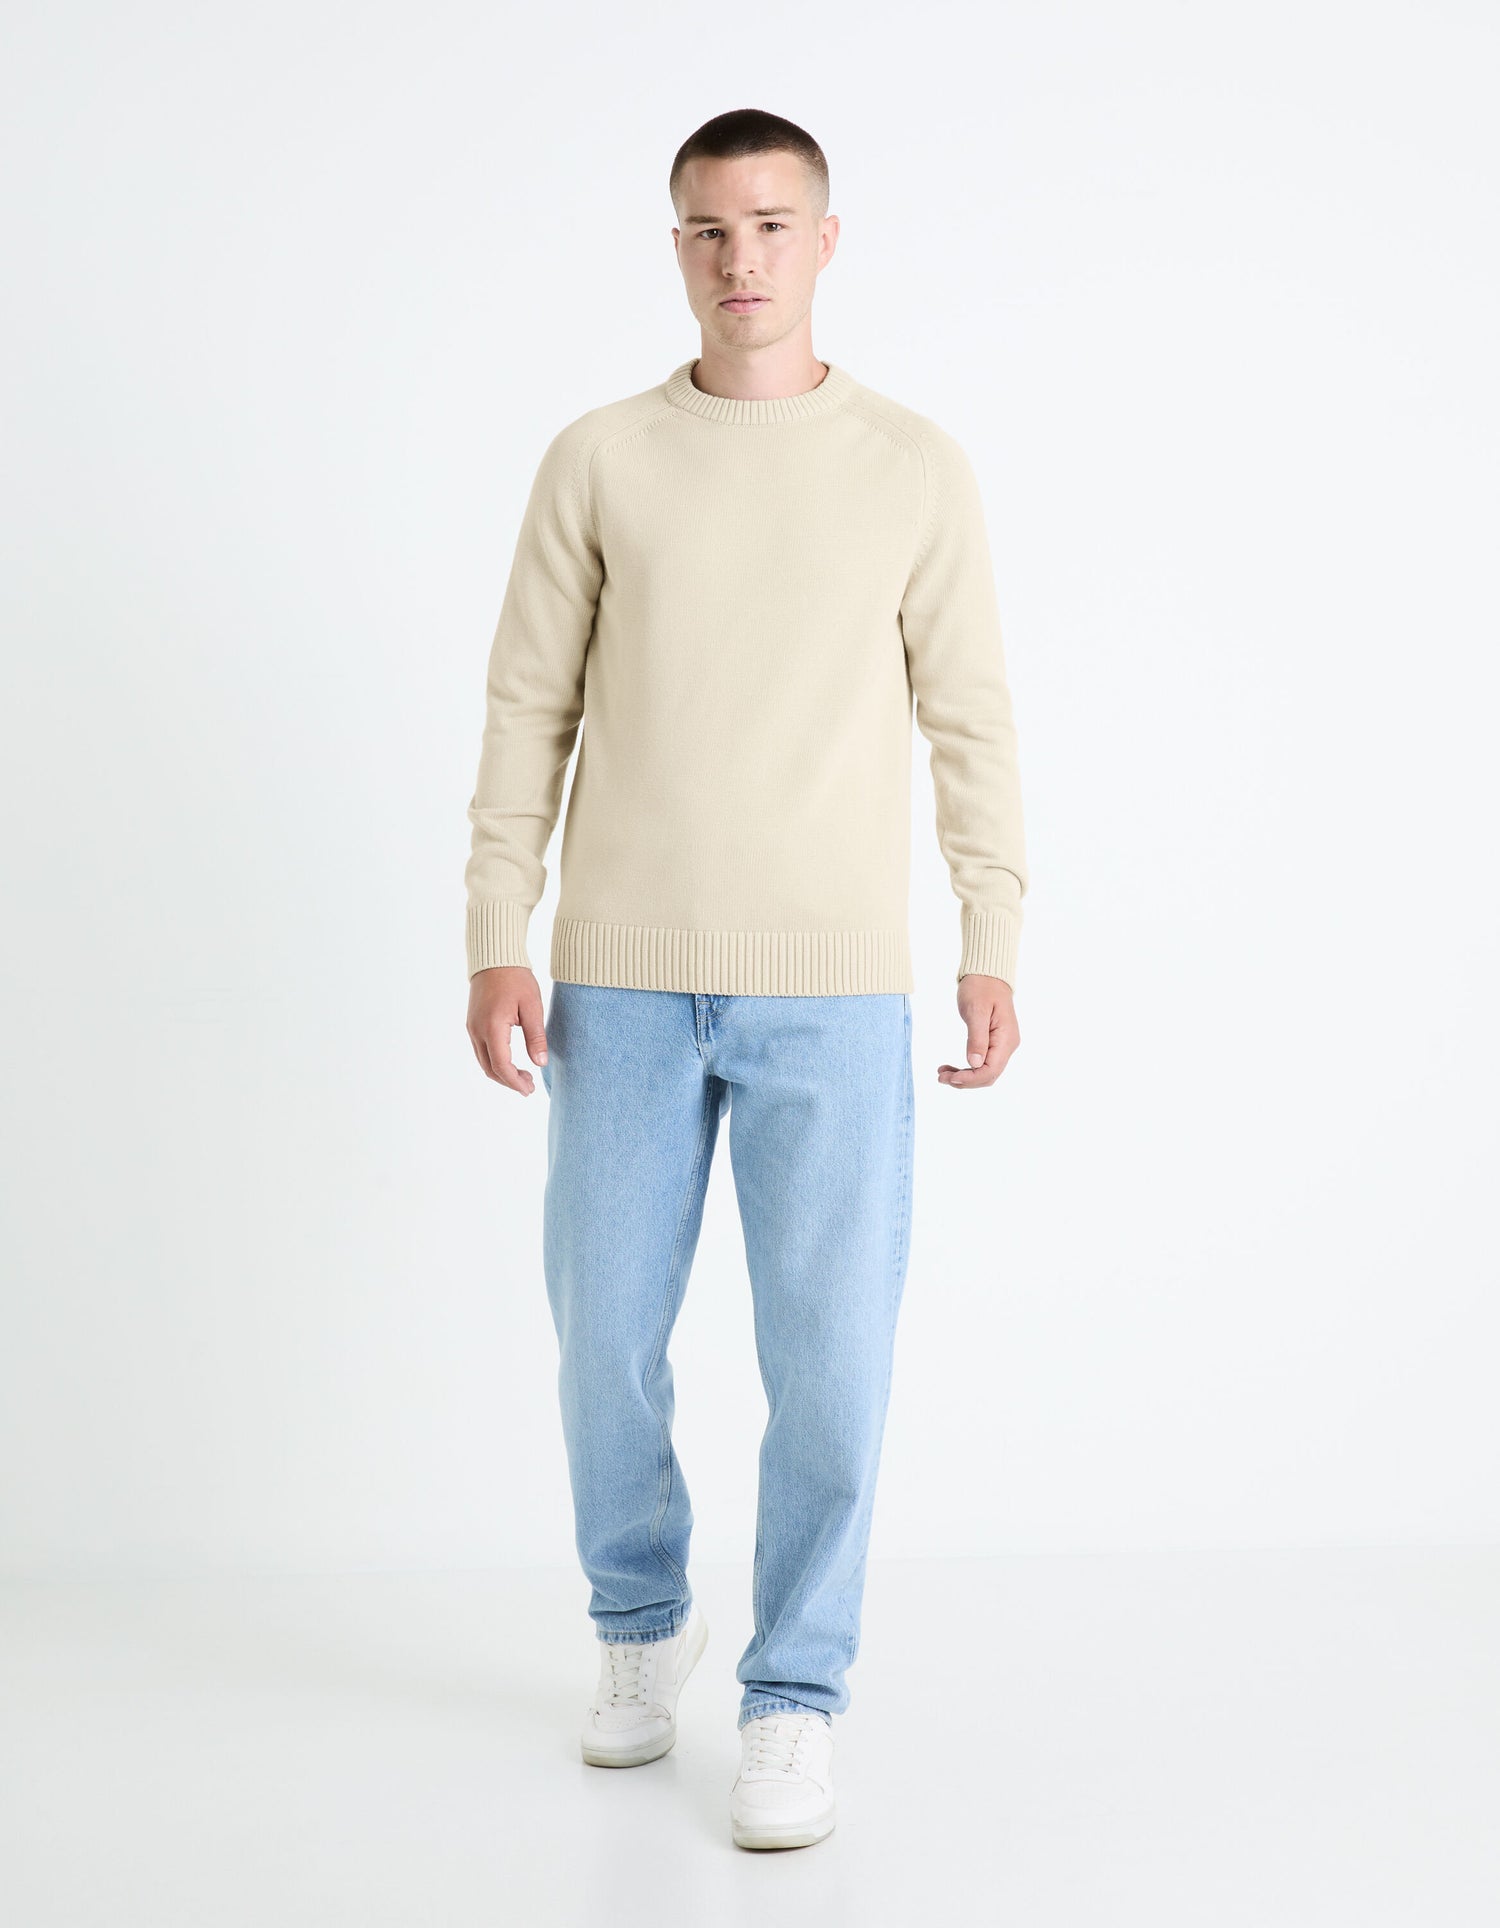 100% Cotton Round Neck Sweater - Beige_FEBASIC_LIGHT BEIGE_03